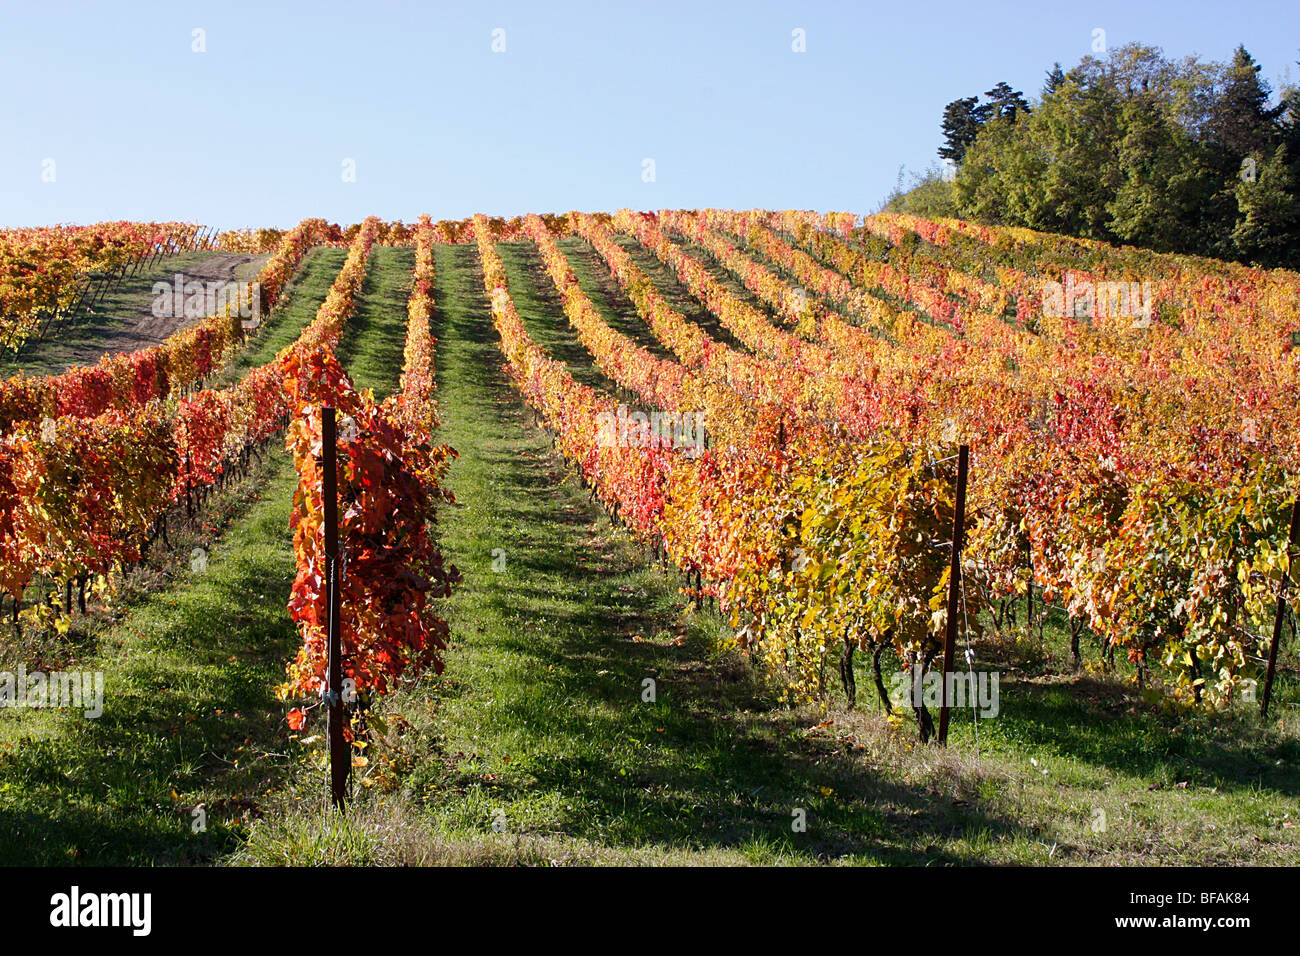 La production de vin de raisin de plus en plus d'un vignoble dans le Marches,Italie. Banque D'Images